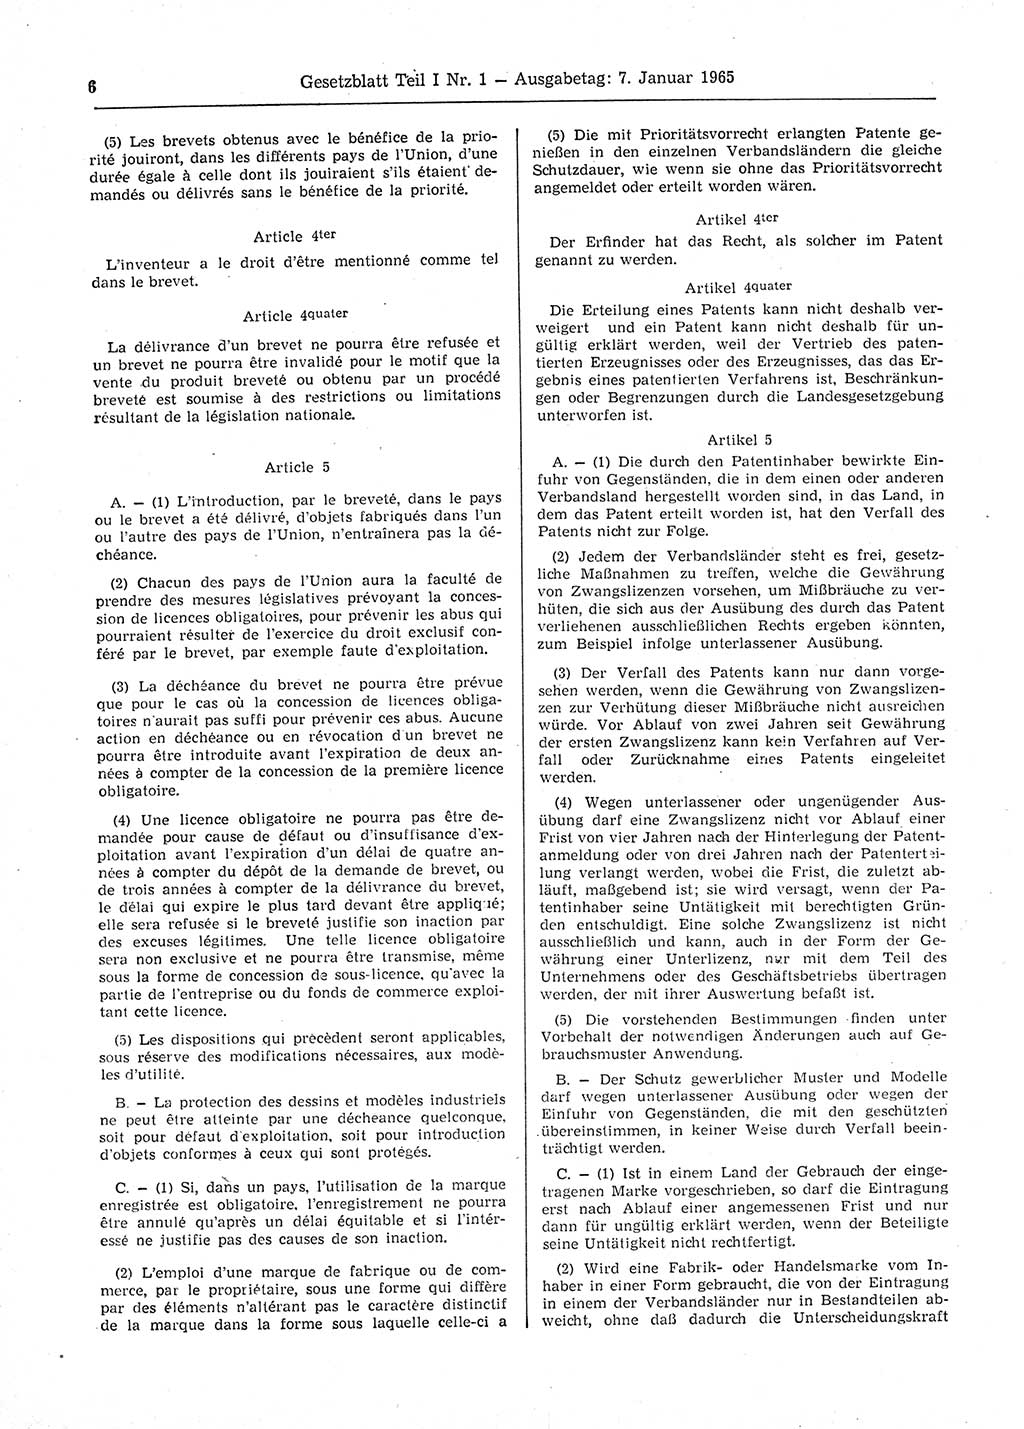 Gesetzblatt (GBl.) der Deutschen Demokratischen Republik (DDR) Teil Ⅰ 1965, Seite 6 (GBl. DDR Ⅰ 1965, S. 6)